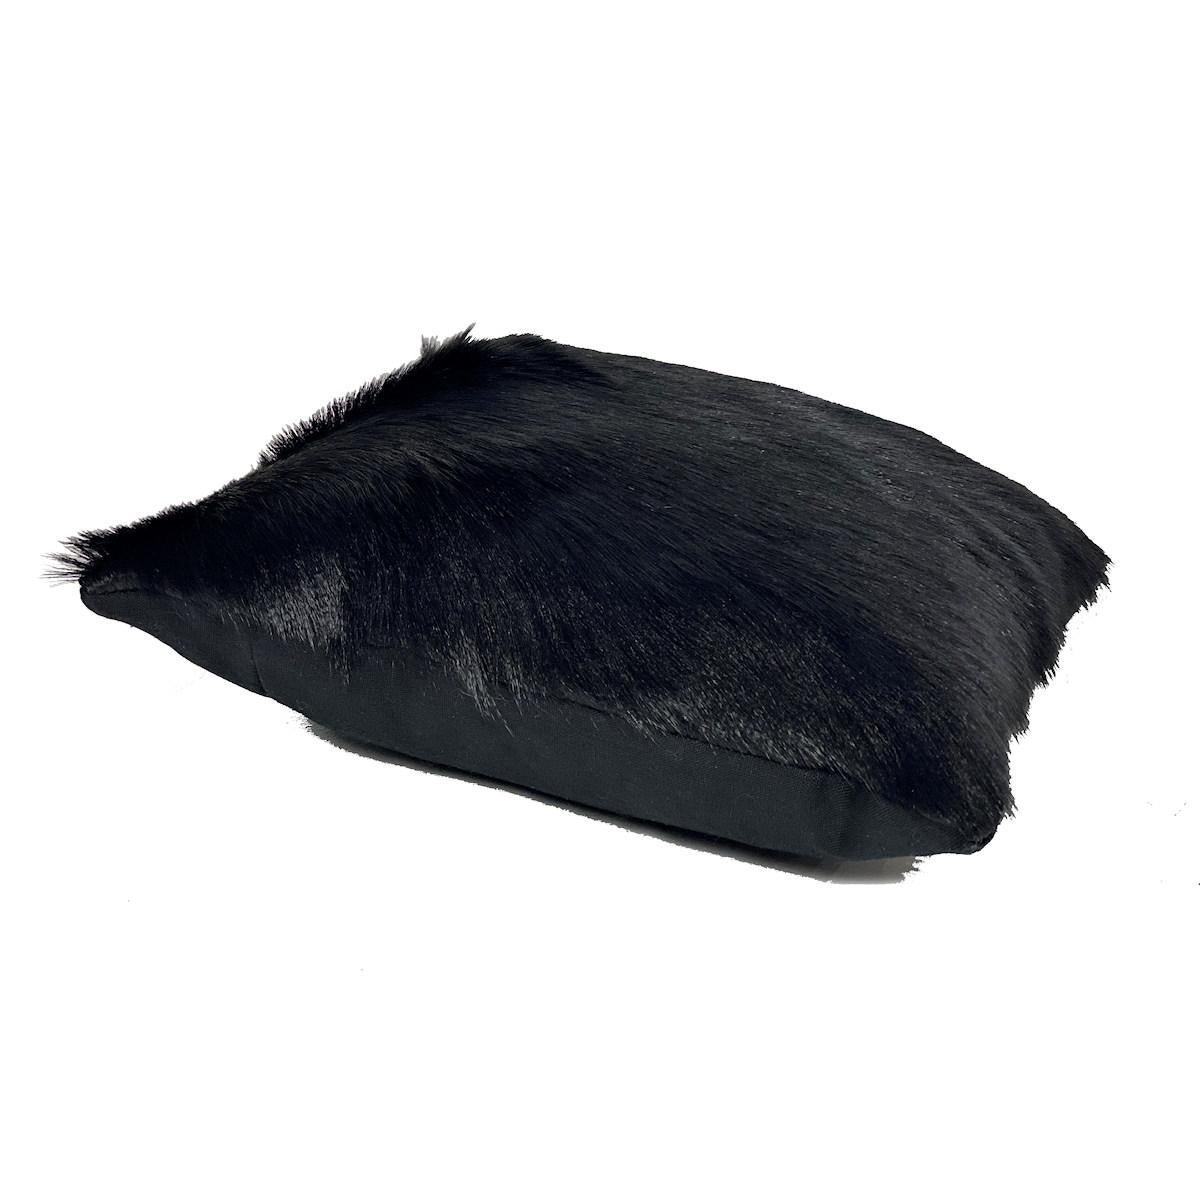 Schwarzes Kissen aus schwarzem Pelz und Ziegenleder - 16x16